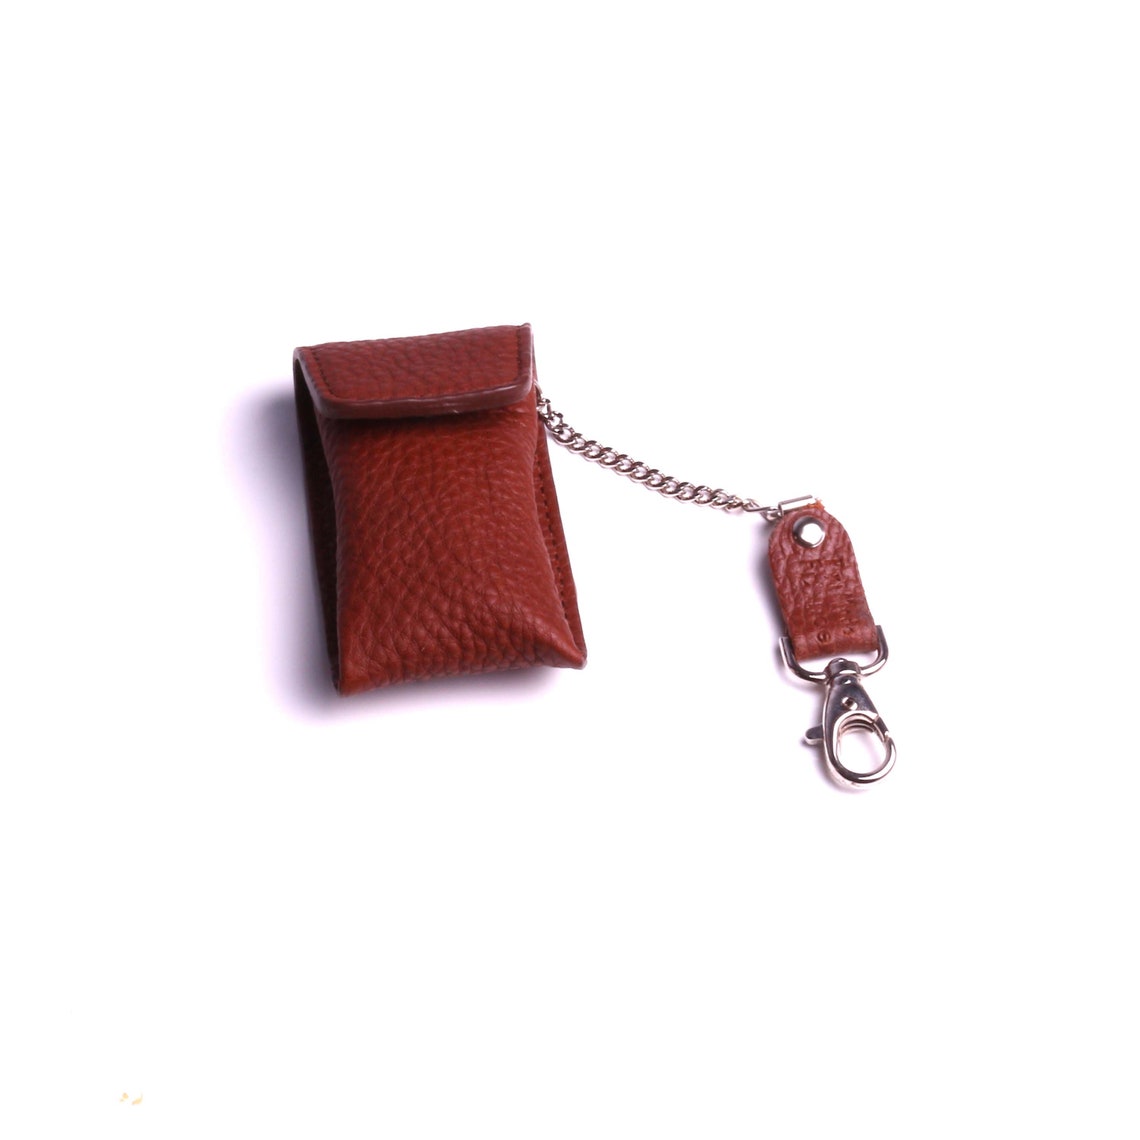 Leather Pocket Case USB Keychain Electronic Protection - Etsy UK